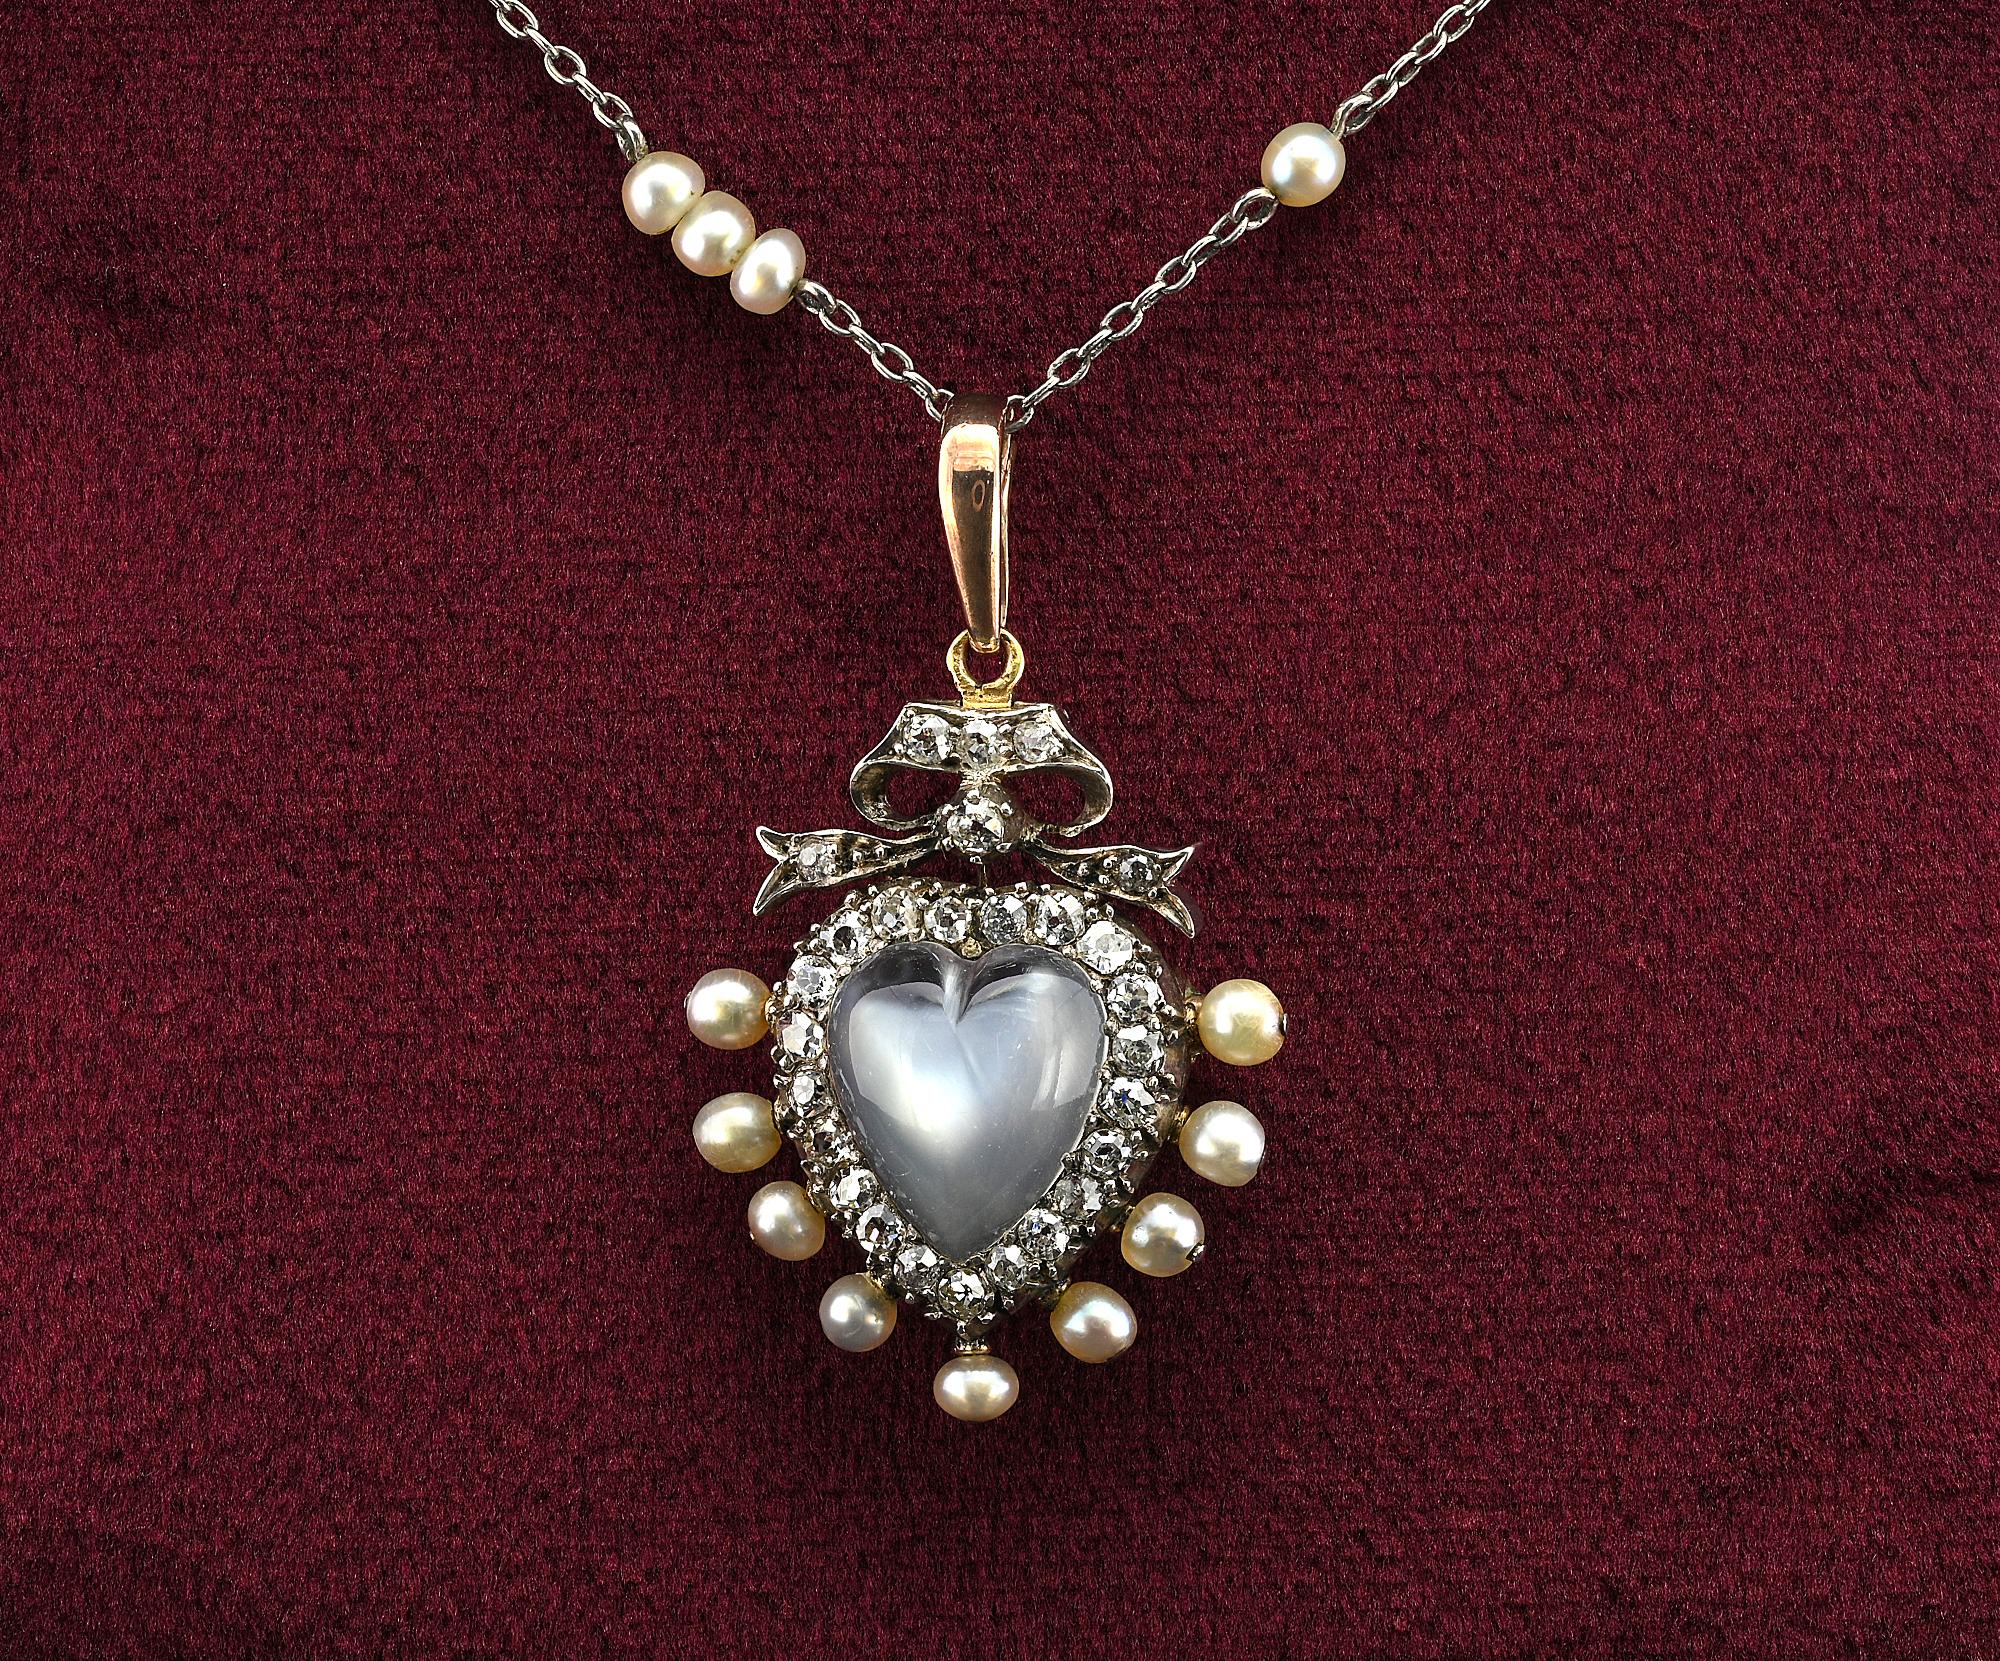 Ce superbe pendentif en forme de cœur sentimental du 19e siècle est en argent et en or 10 carats testé électroniquement. Il peut également être porté en broche.
La grande pierre de lune sculptée en forme de cœur est d'environ 3,00 ct (11,1 x 10,8